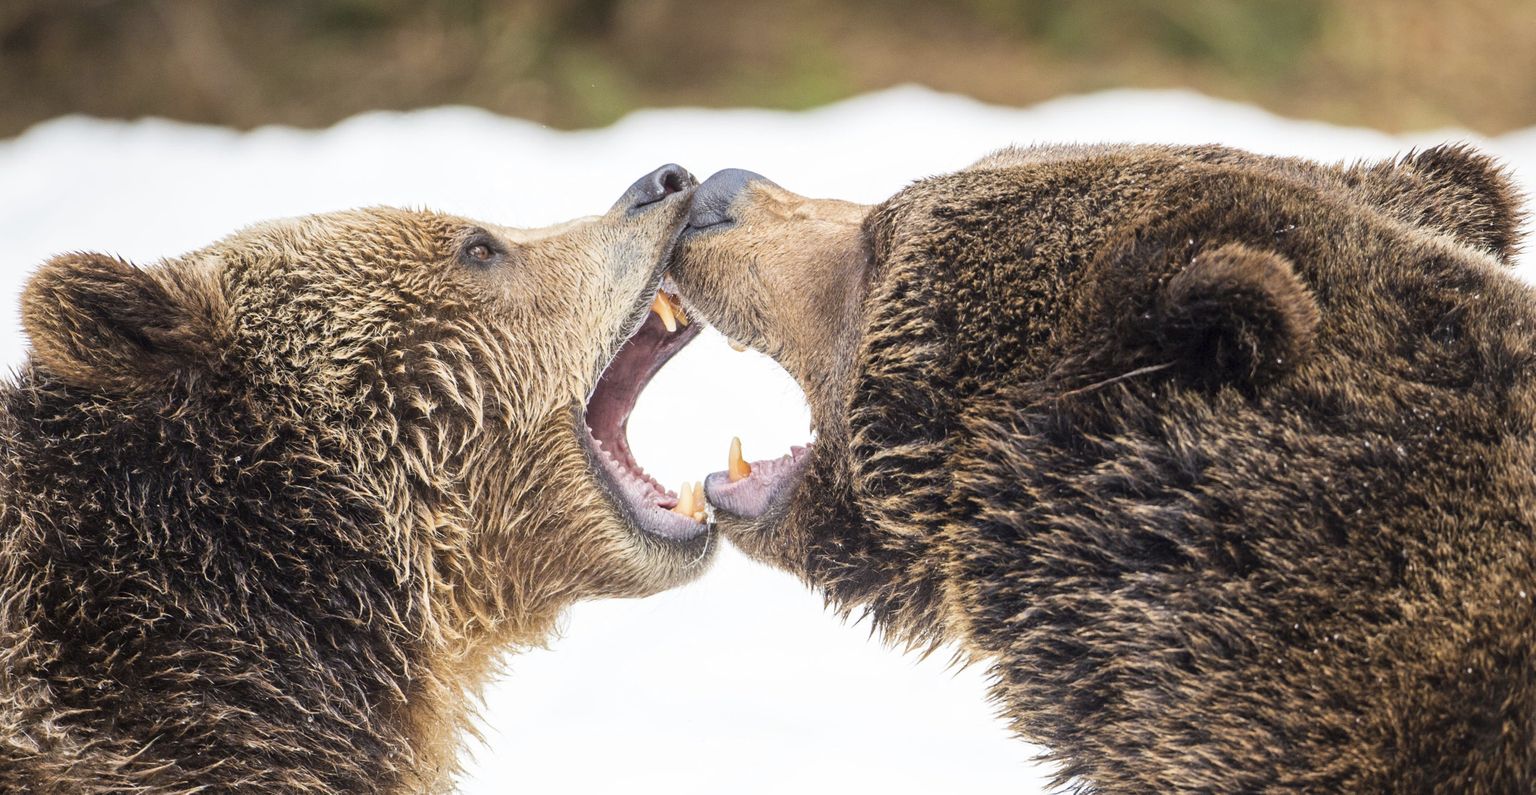 Karud võtavad Saksa looduspargis mõõtu. Pruunkaru on üks paremini uurituid loomasid maailmas